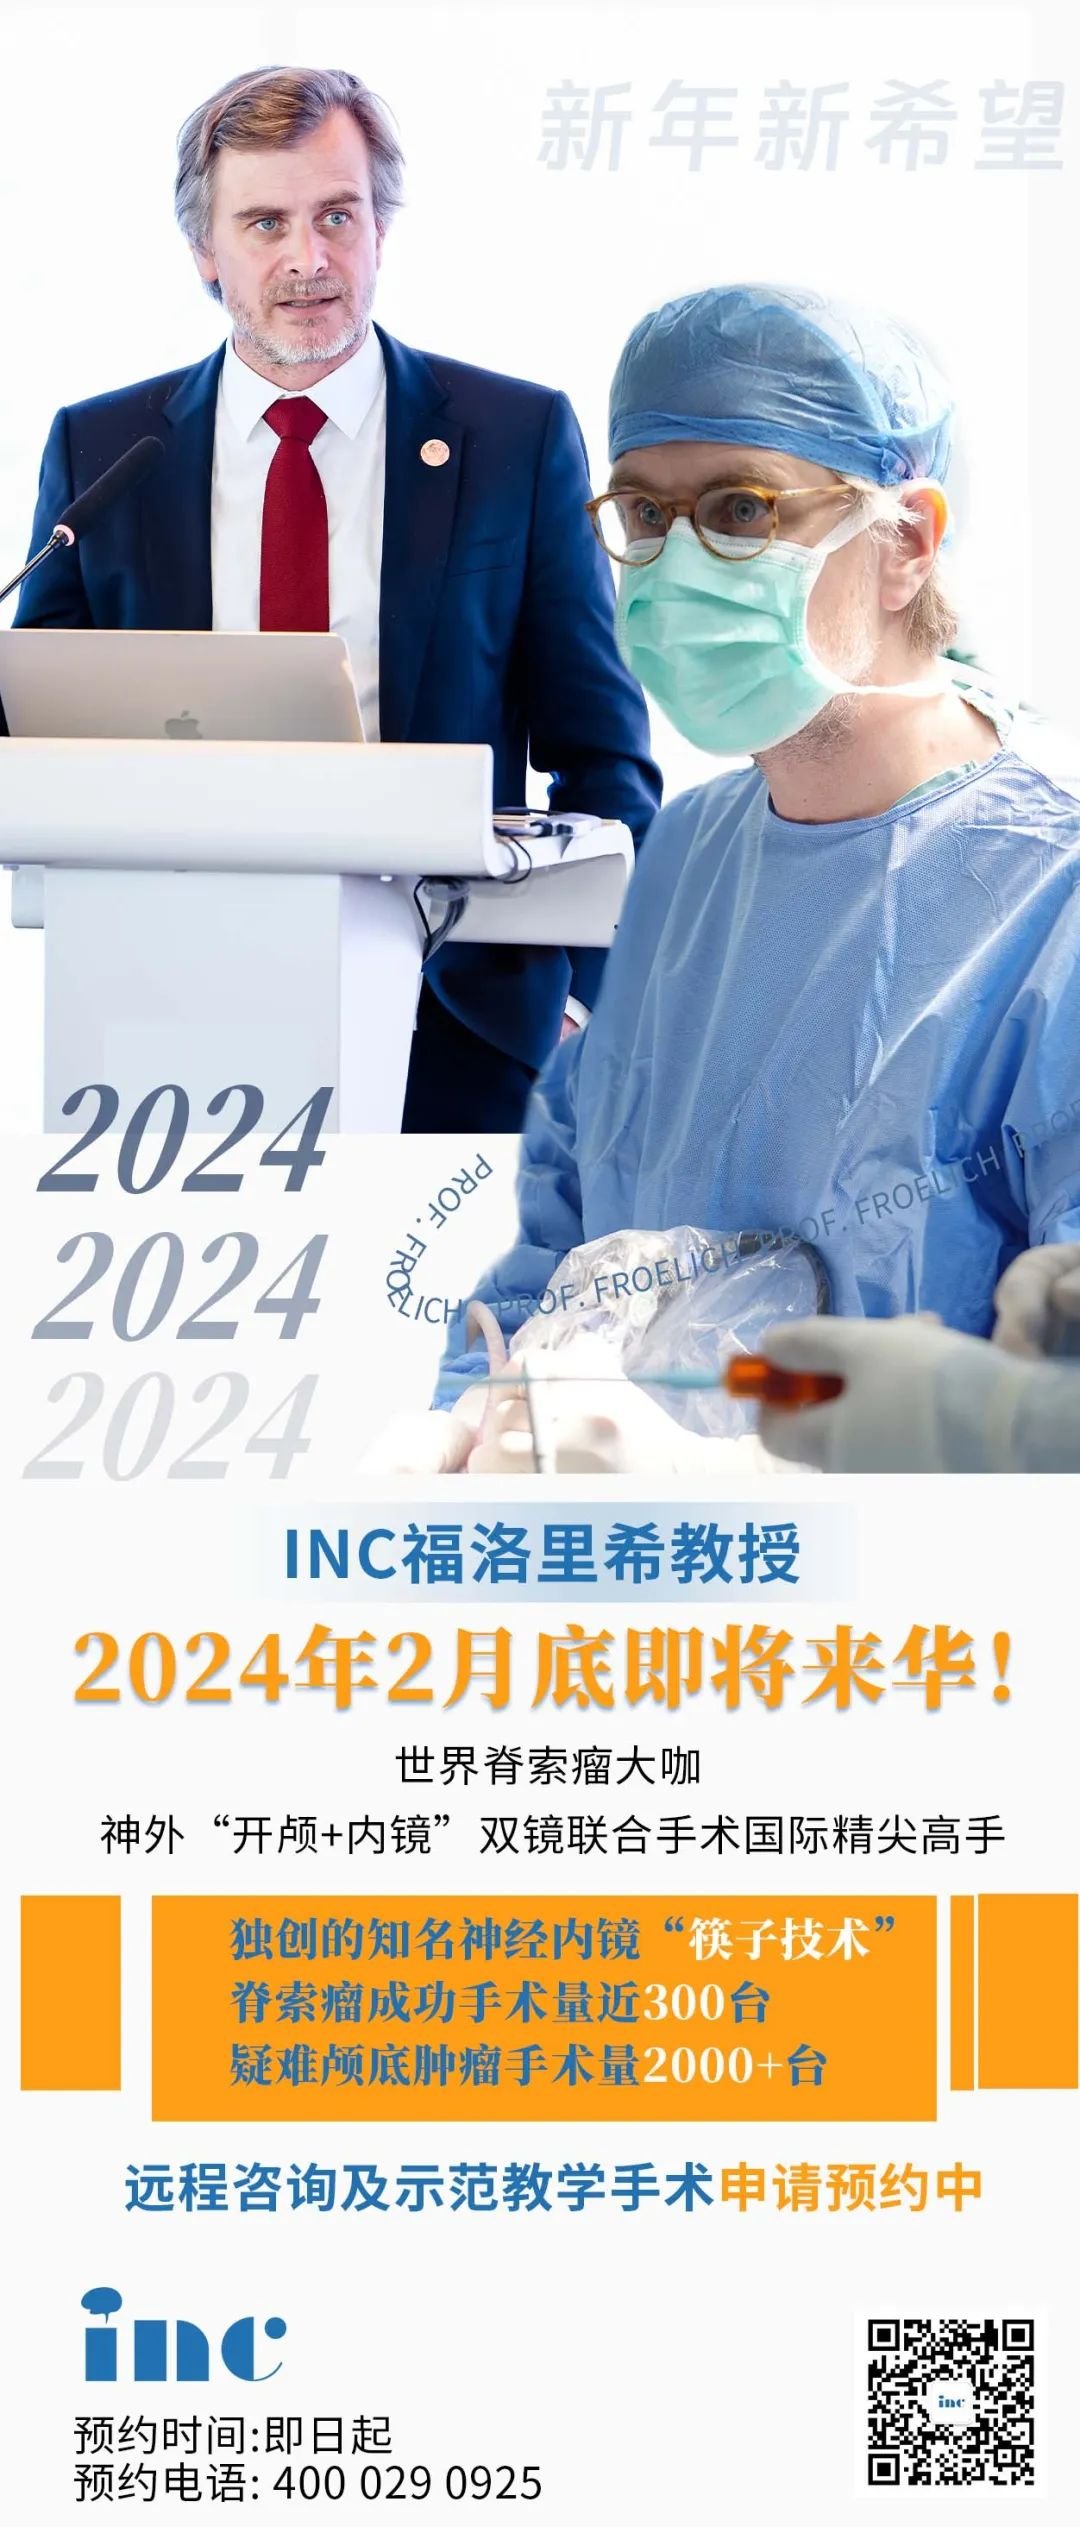 新年新希望！2024年2月底世界颅底双镜手术大咖——福教授即将来华！